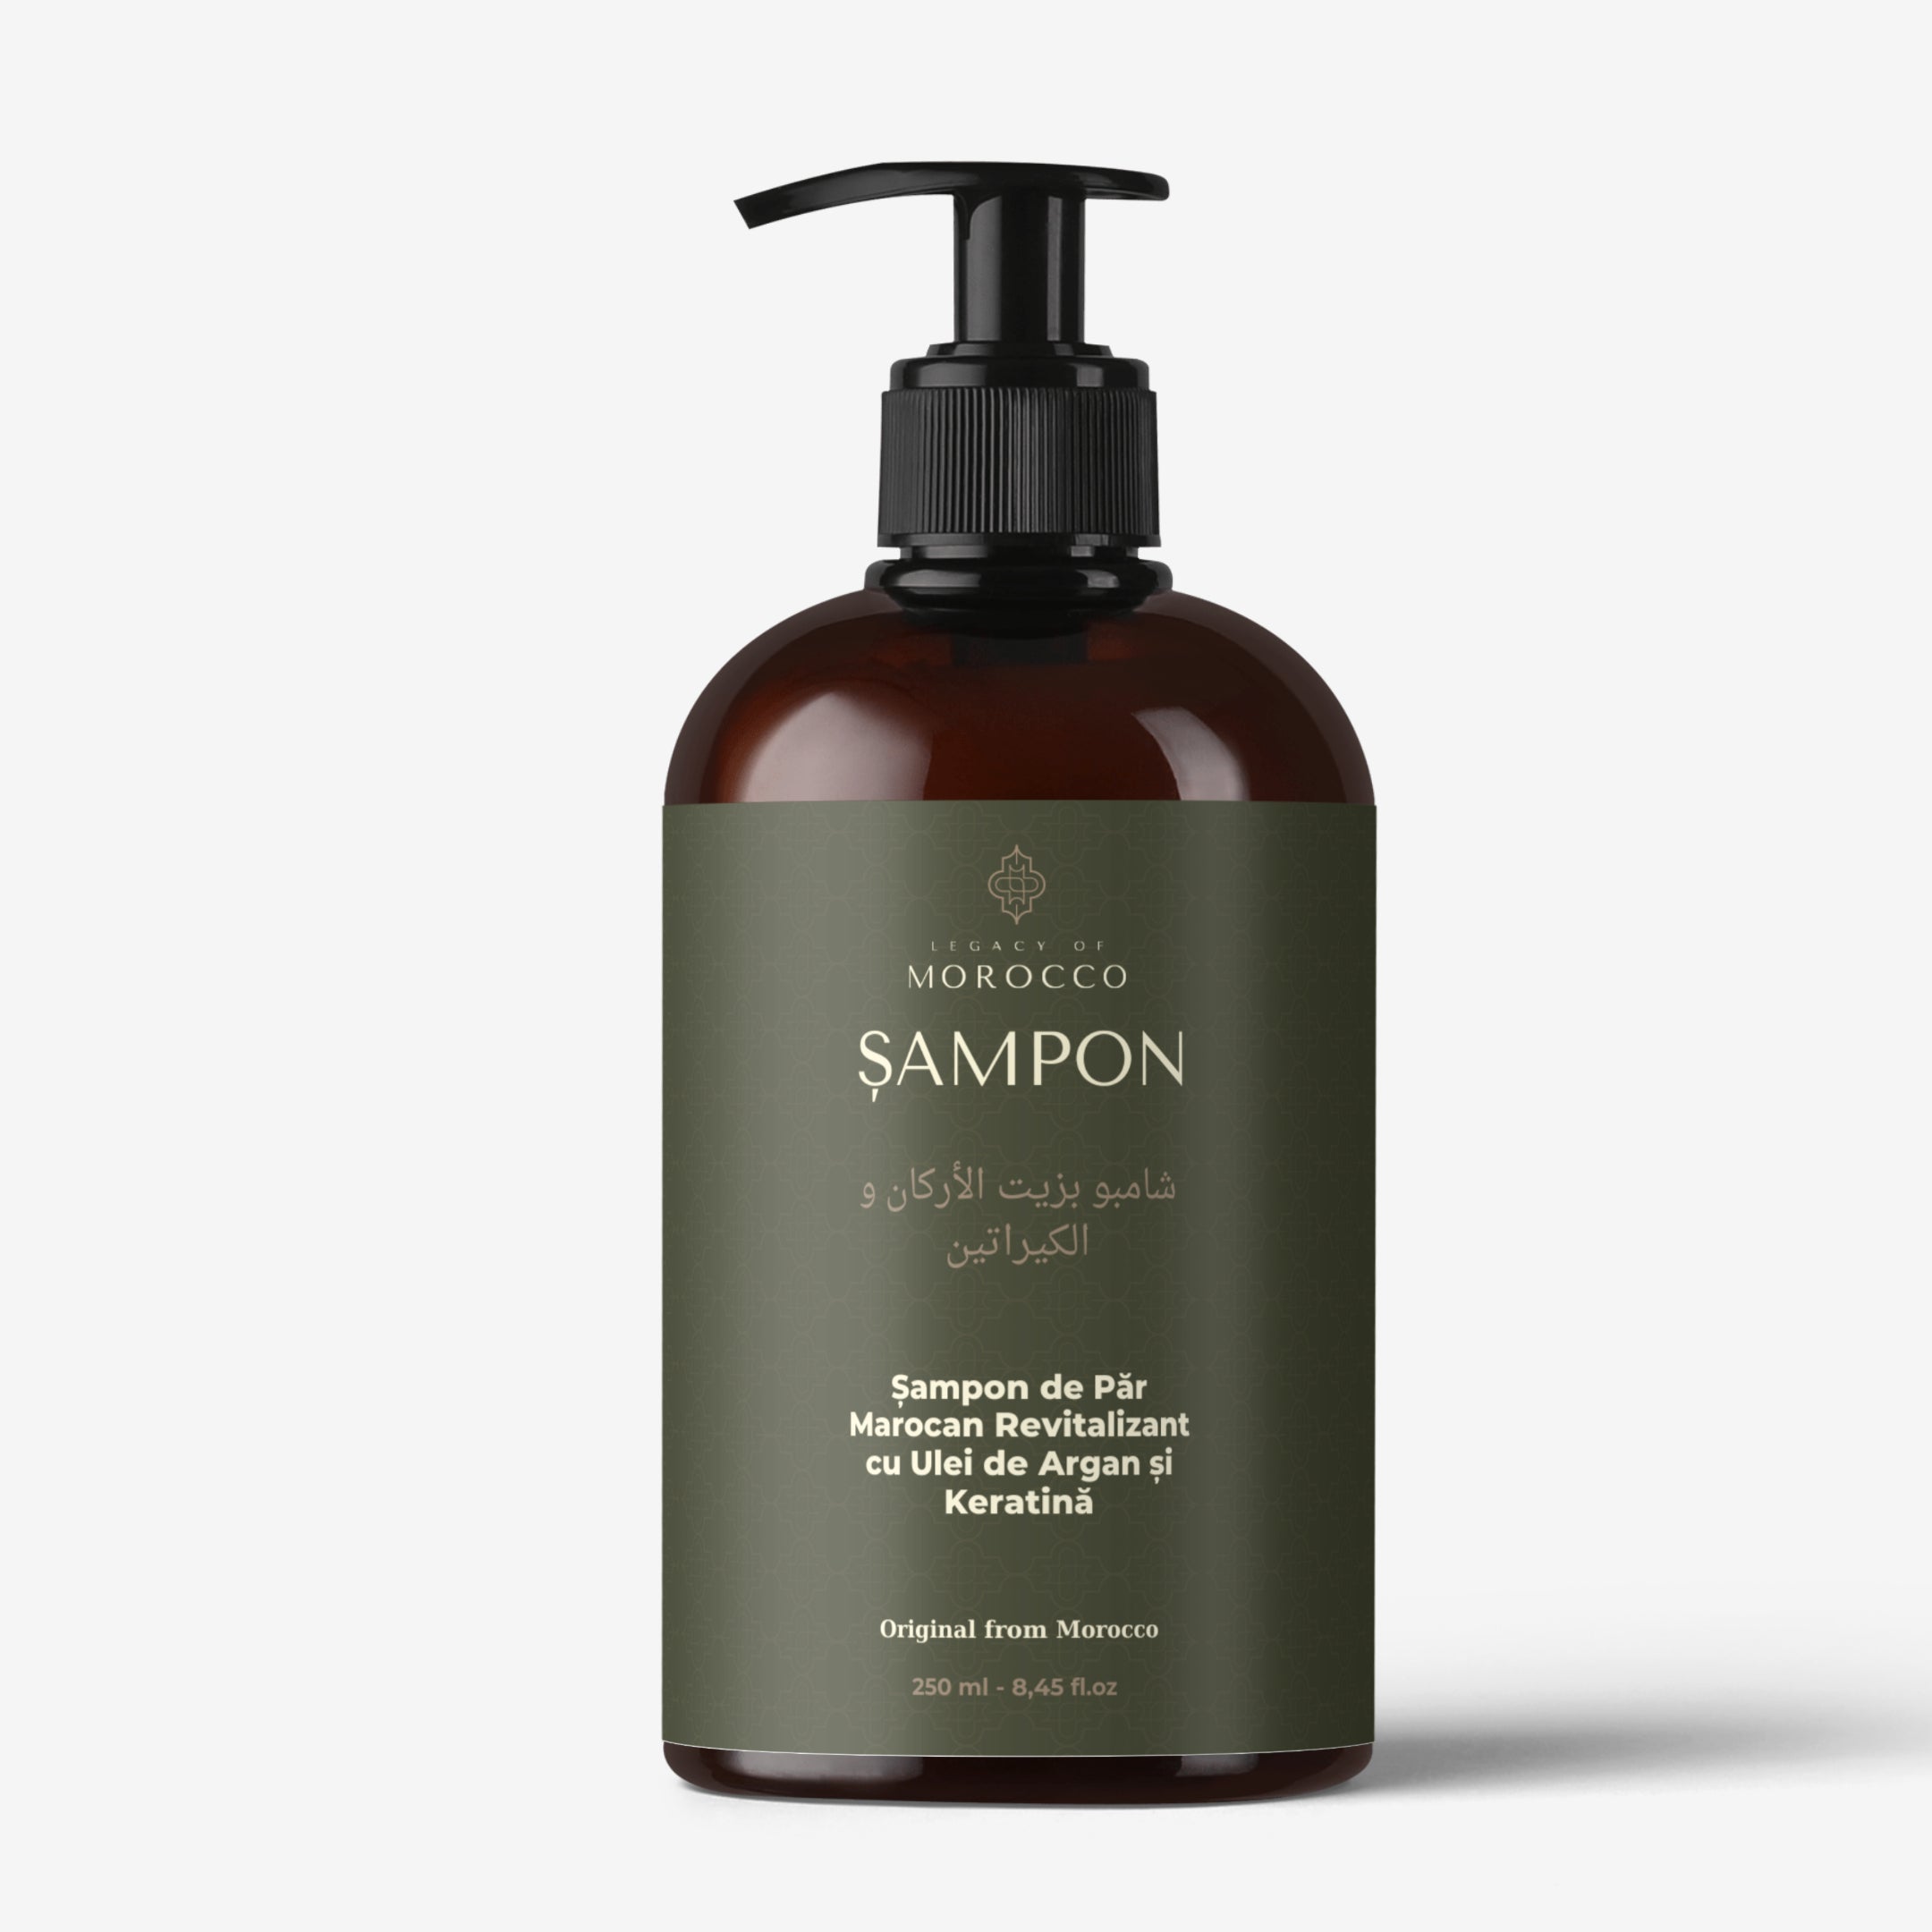 Șampon de Păr Marocan Revitalizant cu Ulei de Argan și Keratină